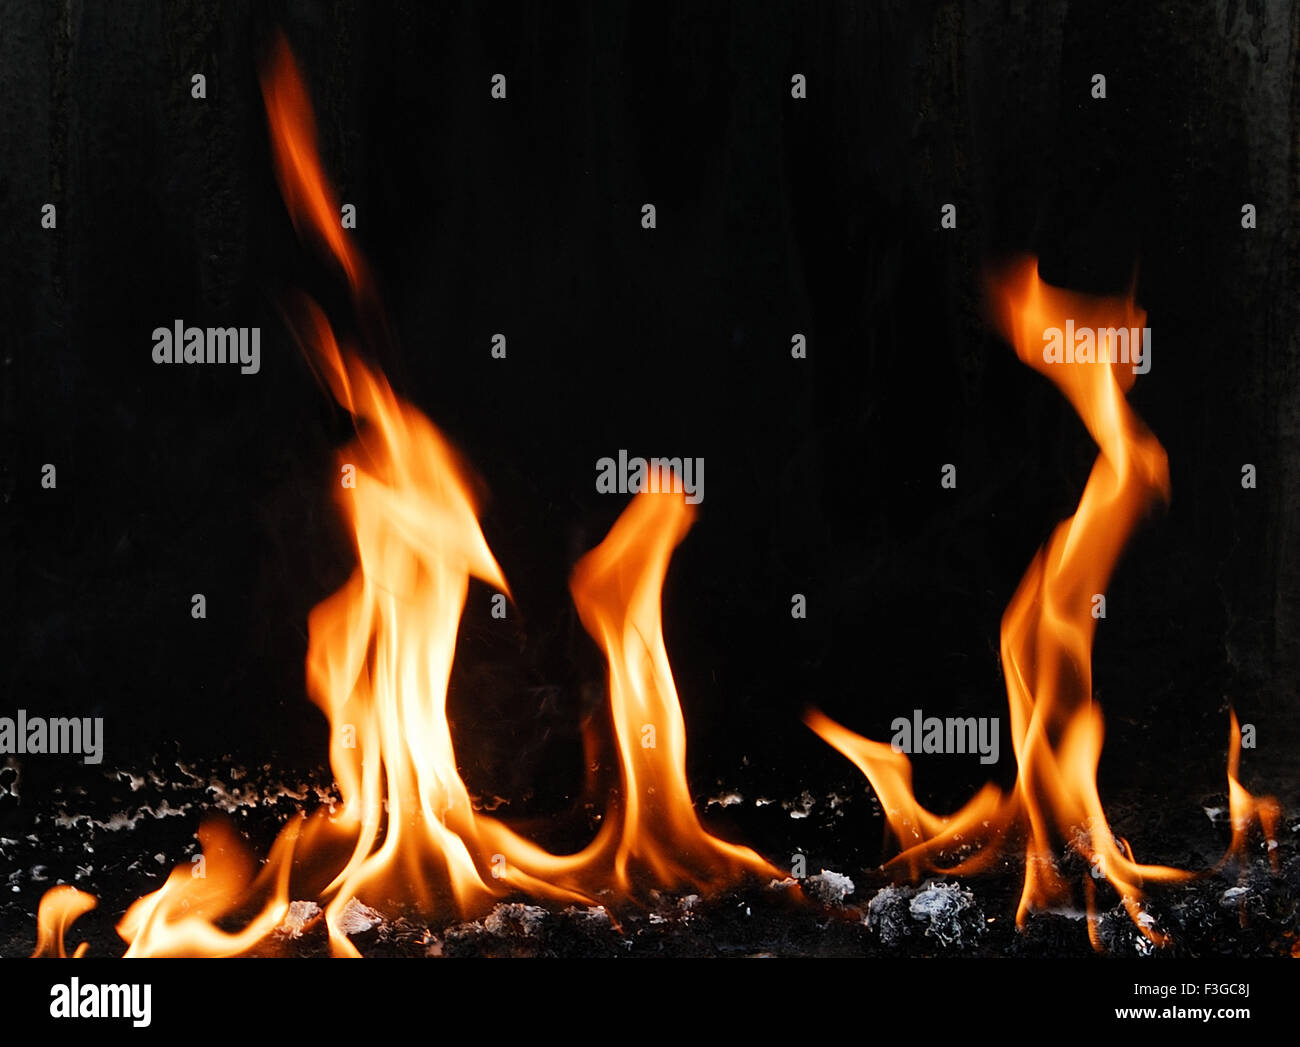 Patrón de fuego creado por quemas velas mirando como algunos fantasmas bailan Foto de stock